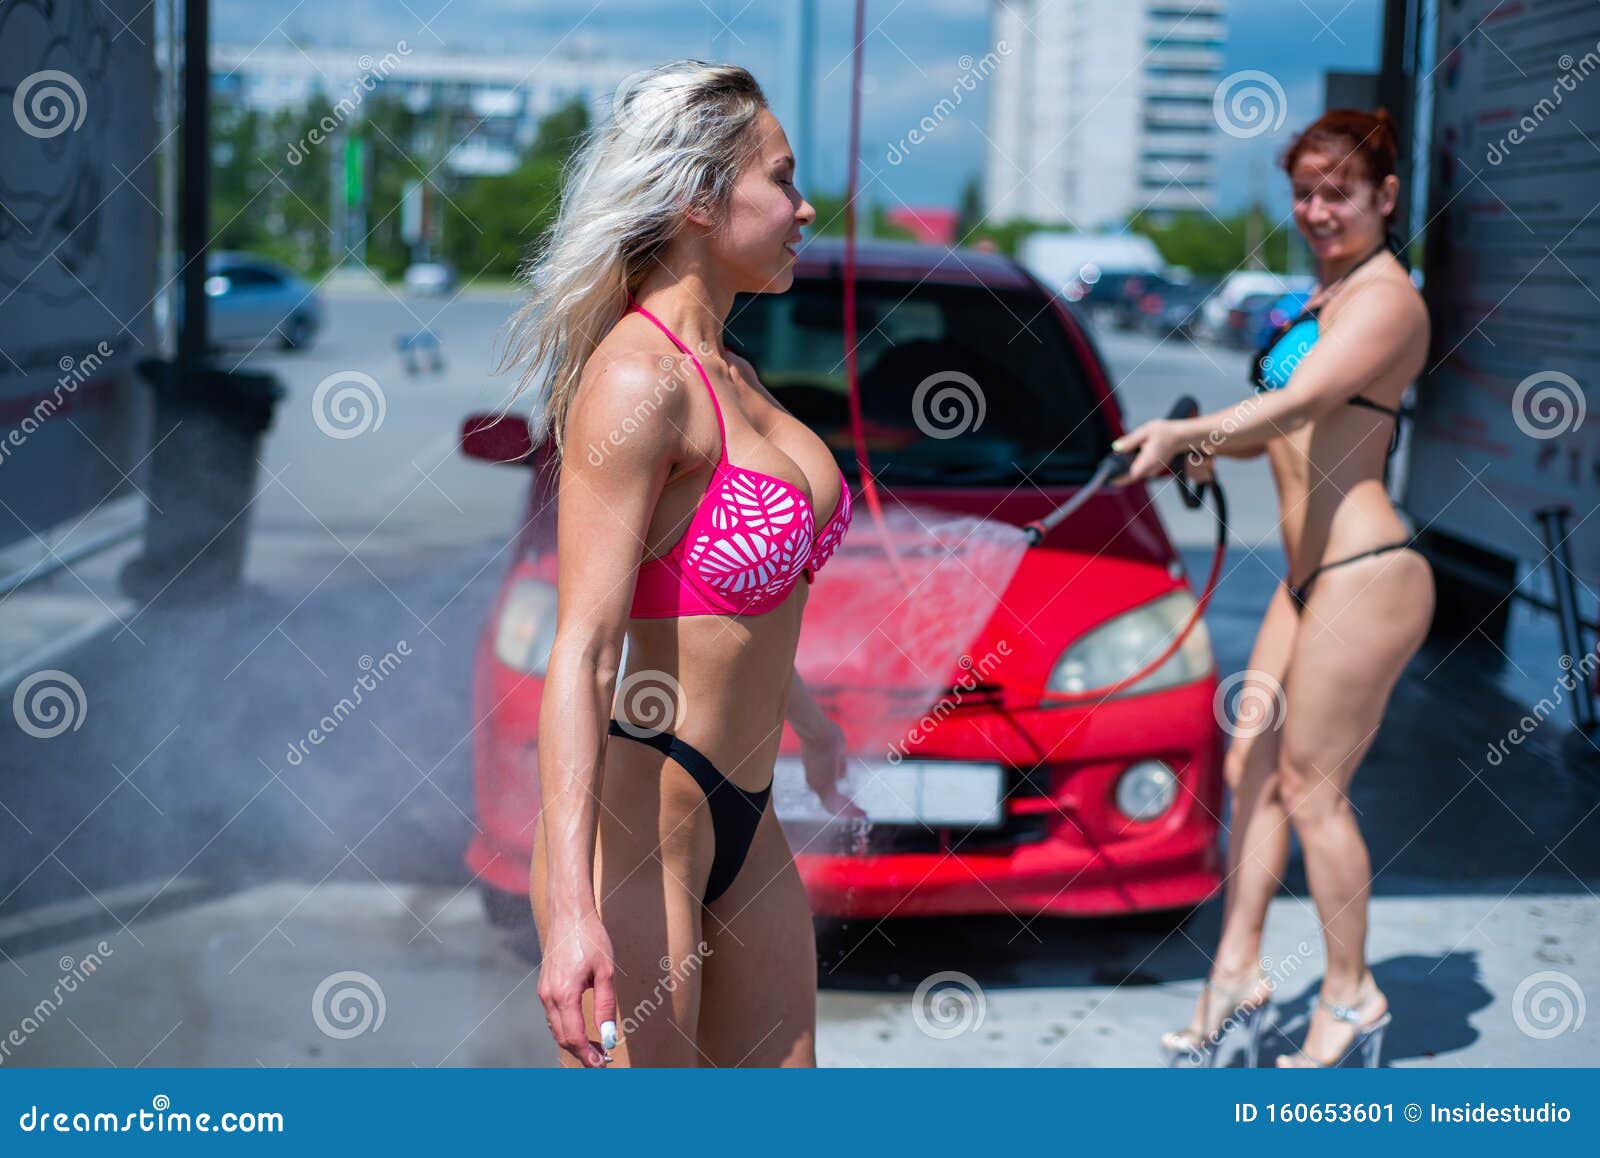 Девушка мыла машину 